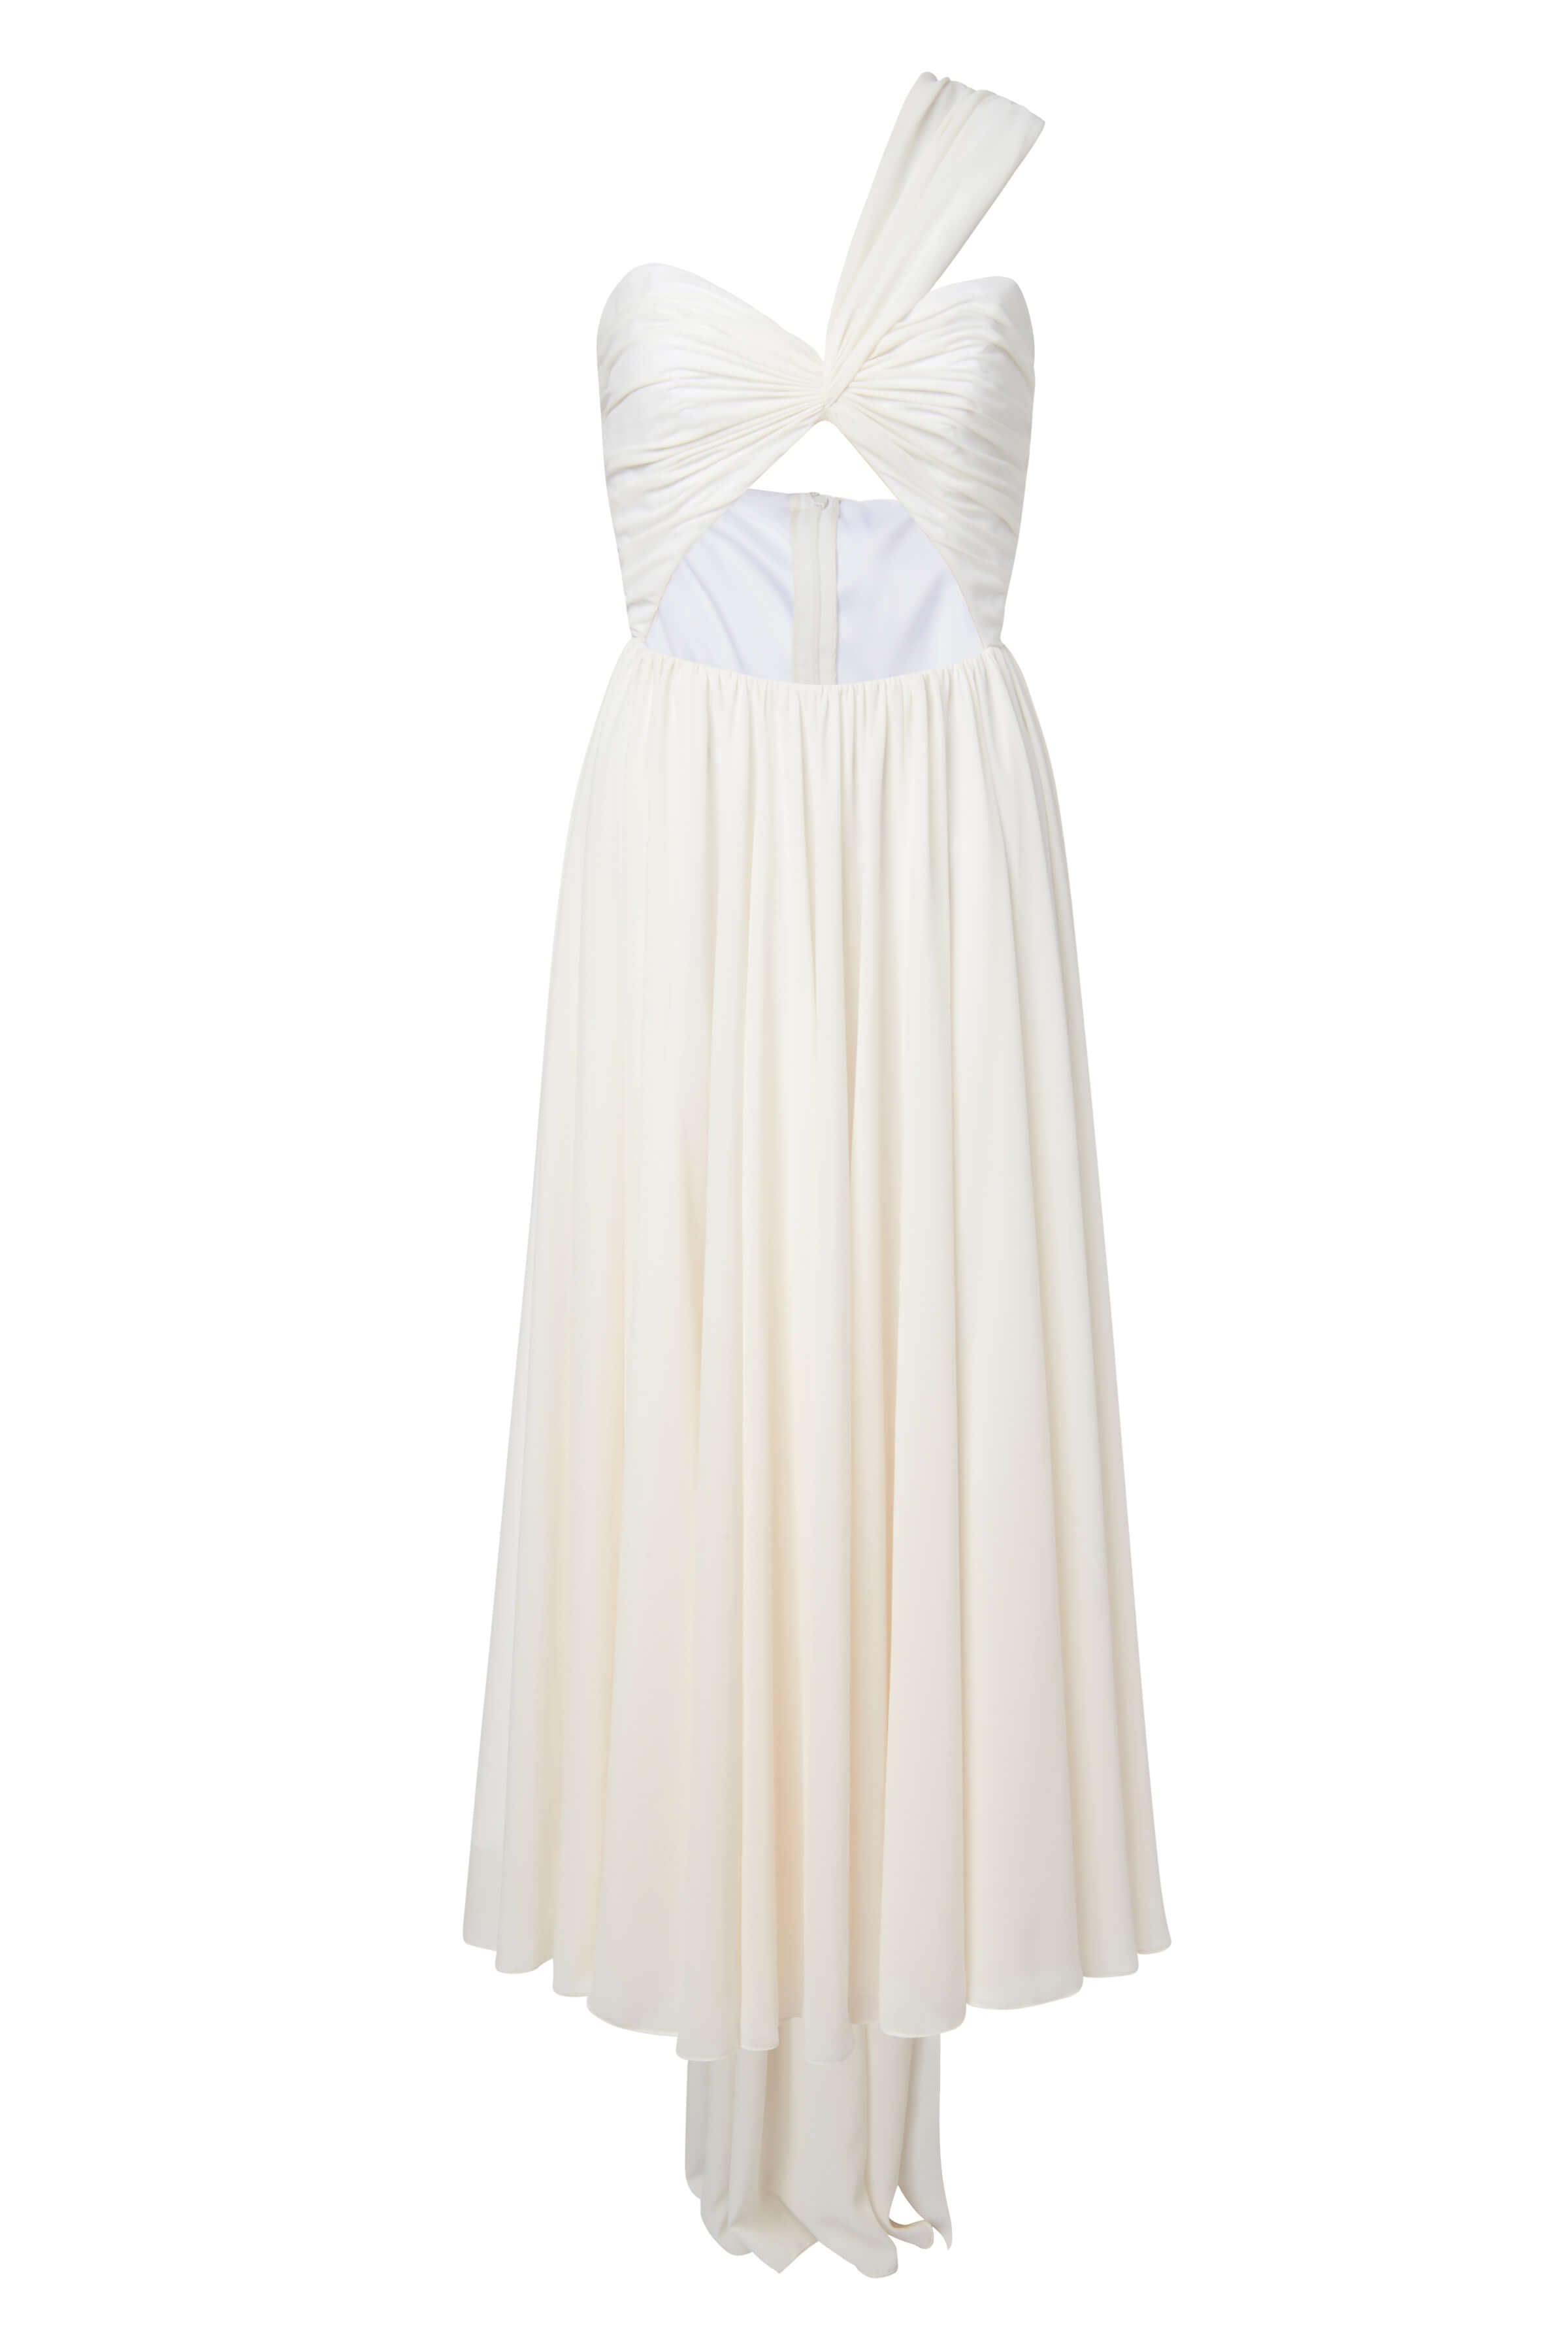 Rosalind White Draped Chiffon One Shoulder Dress